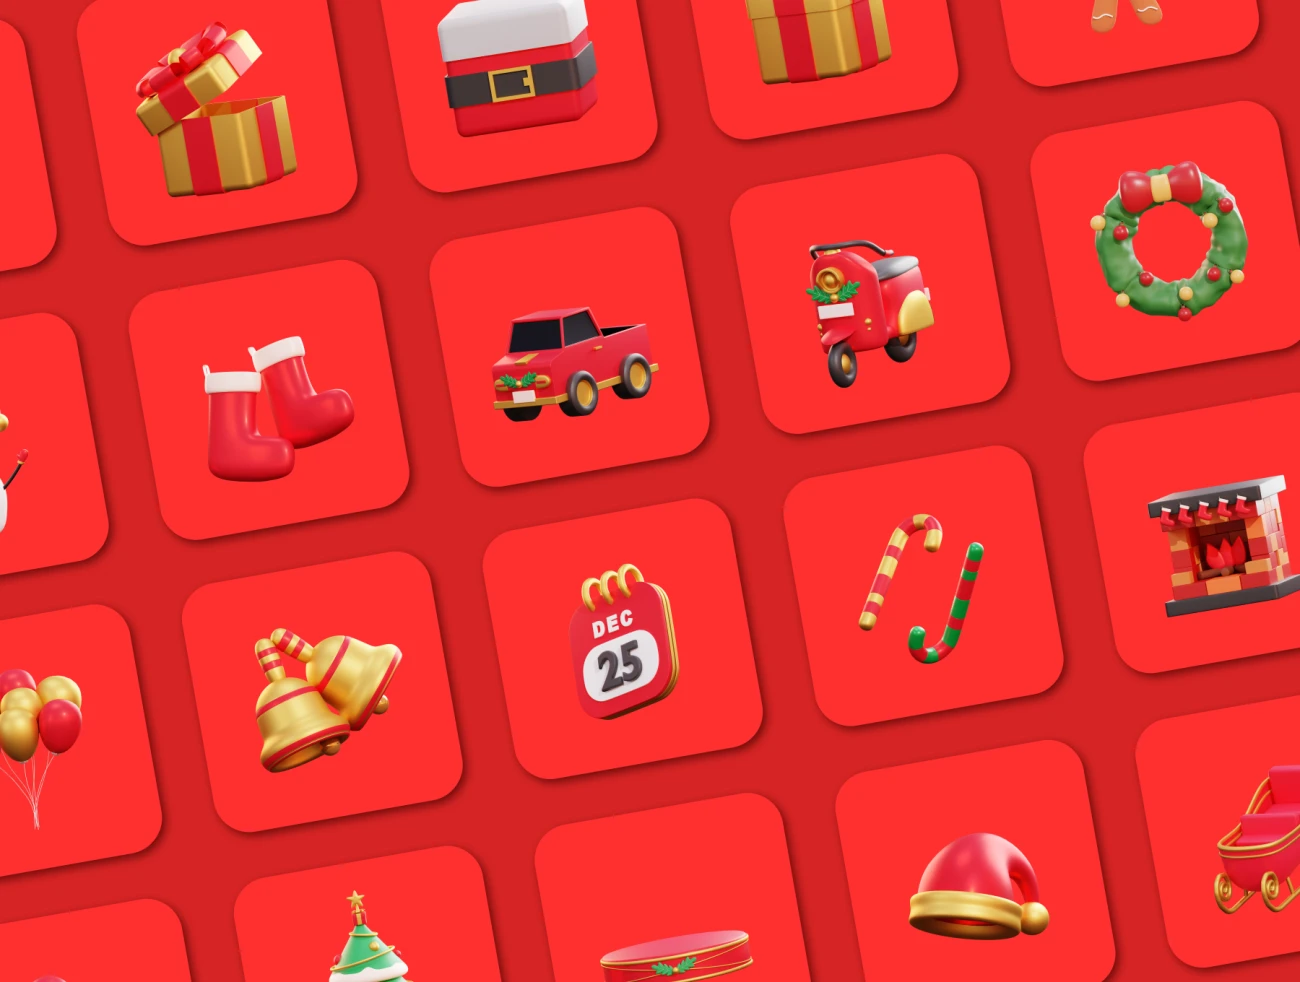 20款3D矢量圣诞节插画图标素材下载 Christmas - 3D Icon Premium Pack .blender .psd .figma-3D/图标-到位啦UI